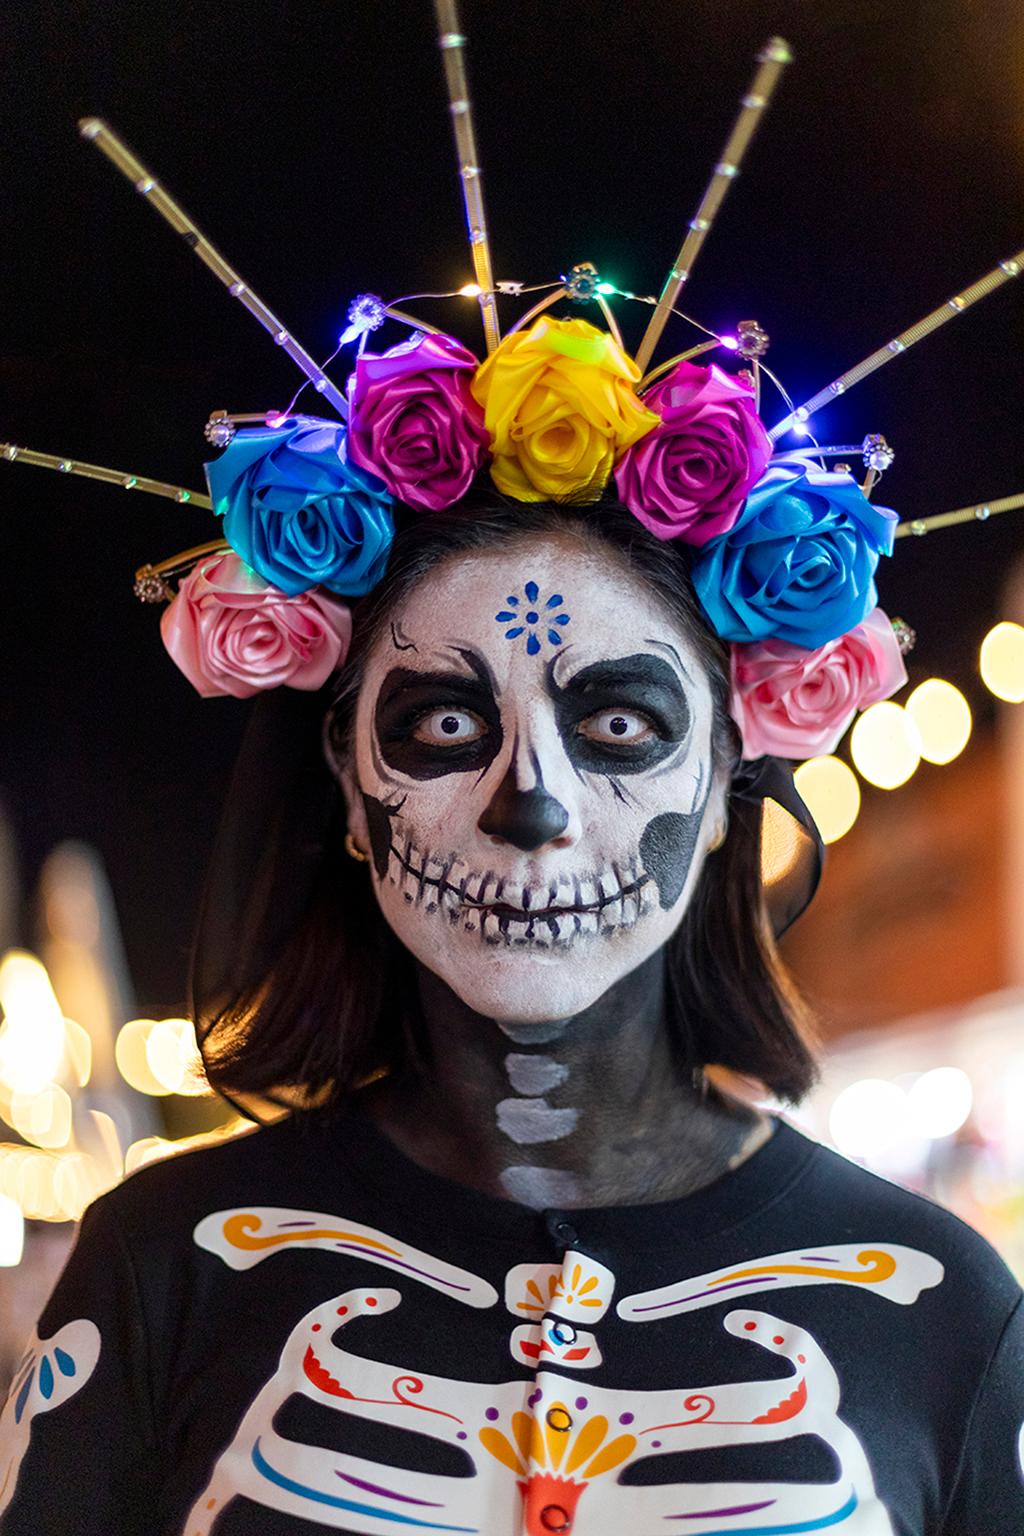  Cosmo Condina Color Photograph - “Crazy Eyes”,  Day of the Dead, Dia de los Muertos, Isla Mujeres, Mexico, 2023